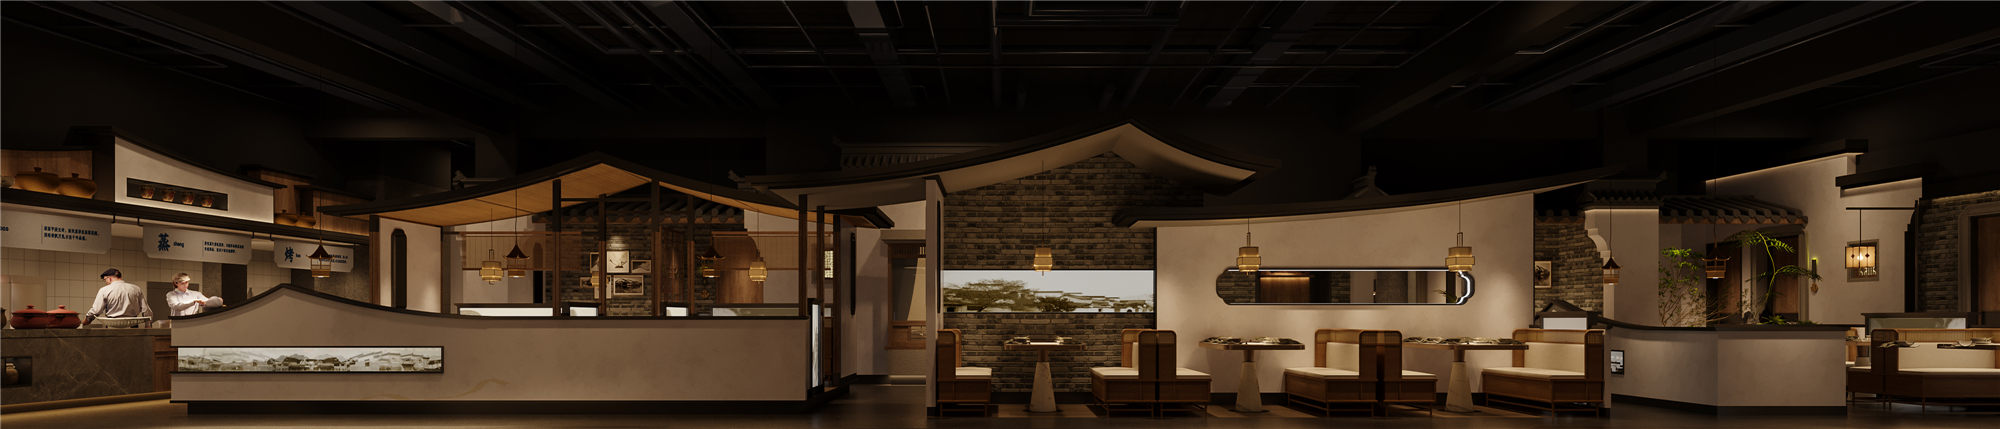 千岛湖淳圆外主题餐厅设计